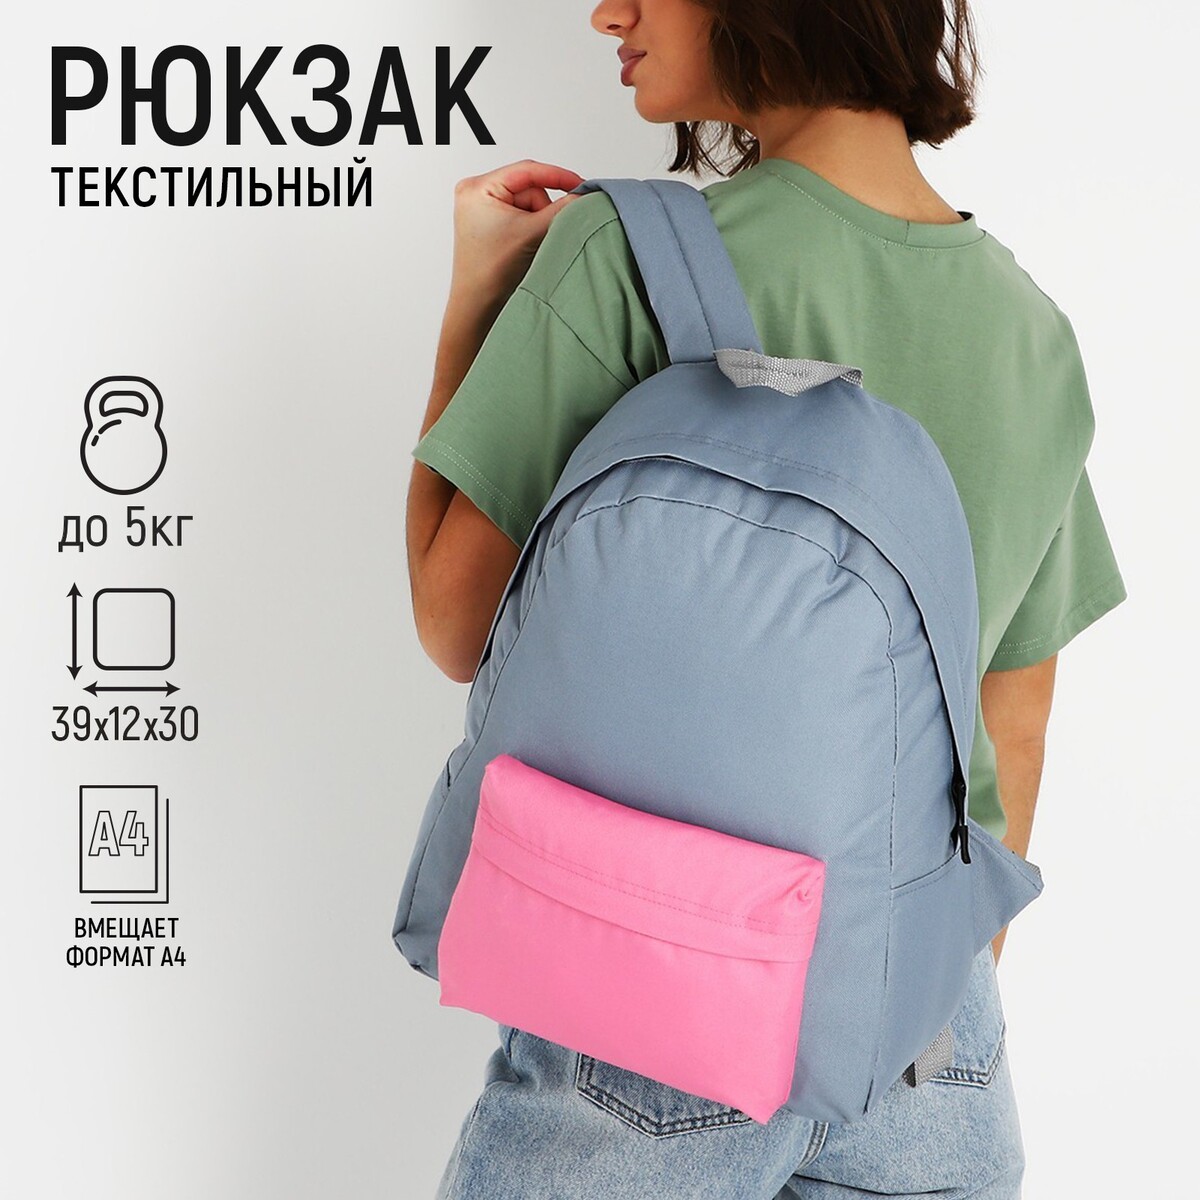 Рюкзак текстильный с цветным карманом, 30х39х12 см, серый/розовый рюкзак со светоотражающим карманом progress